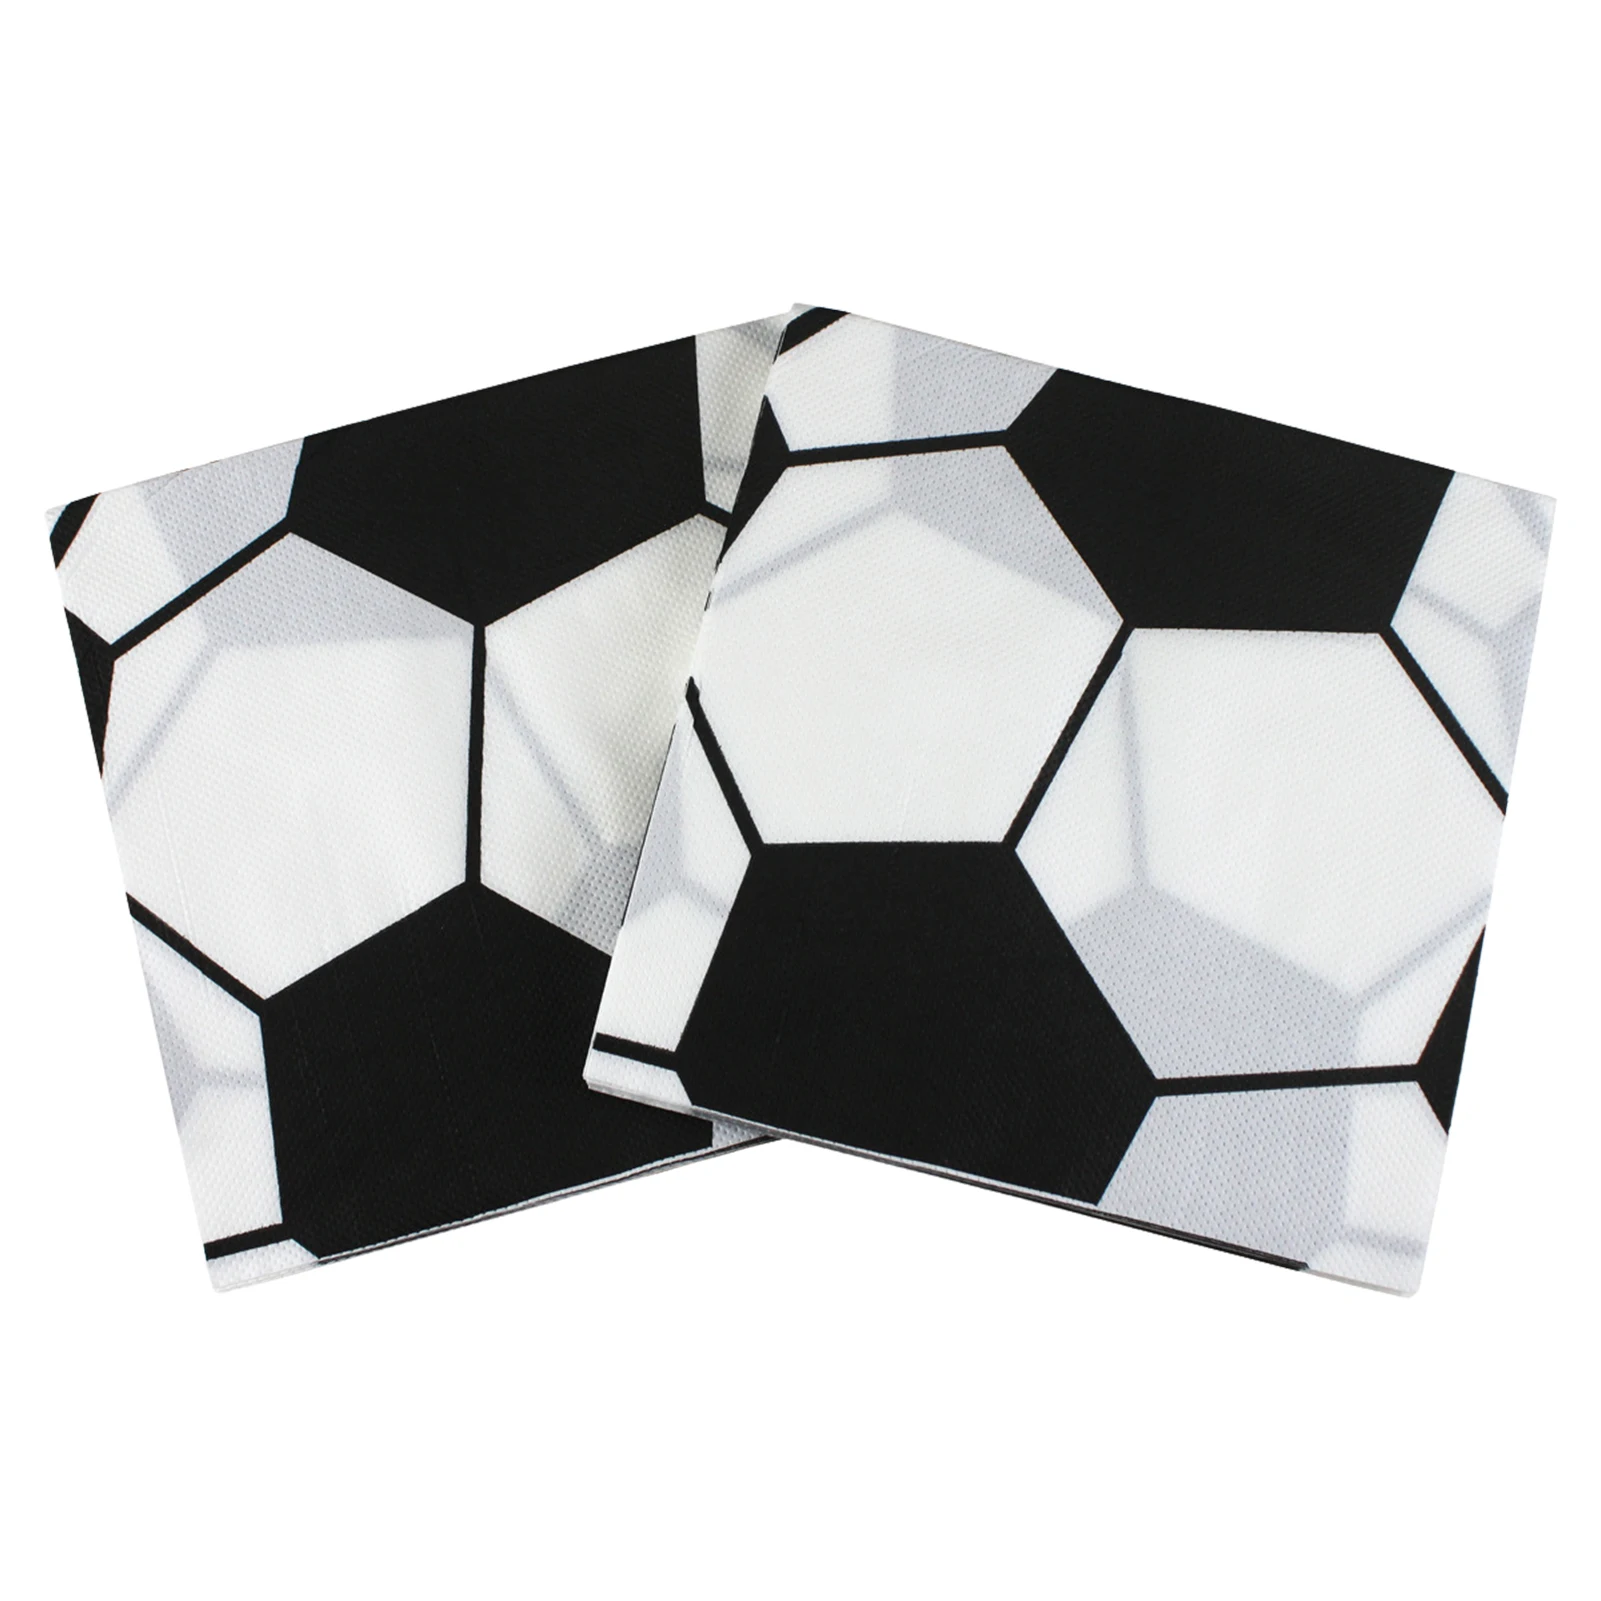 

Квадратные салфетки для футбольной вечеринки размером 33x33 см, квадратные салфетки с рисунком для чемпионата мира по Катару 2022 года, товары д...